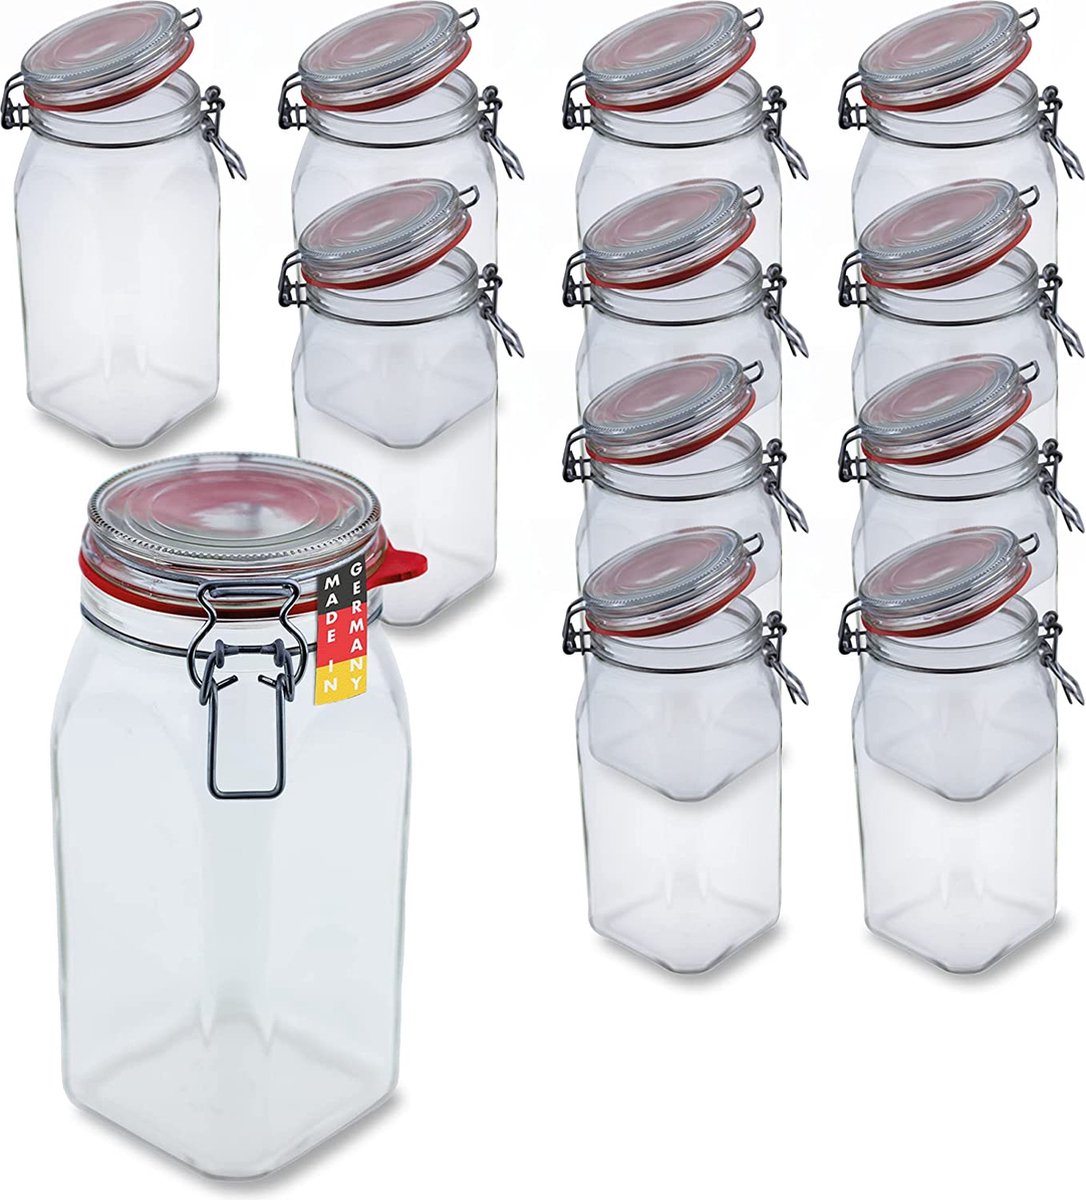 12 draadbeugelglazen 1550 ml bruikbaar als weckpot en fermenteerglas, voor het bewaren, glazen om te vullen, lege glazen met draadbeugel,